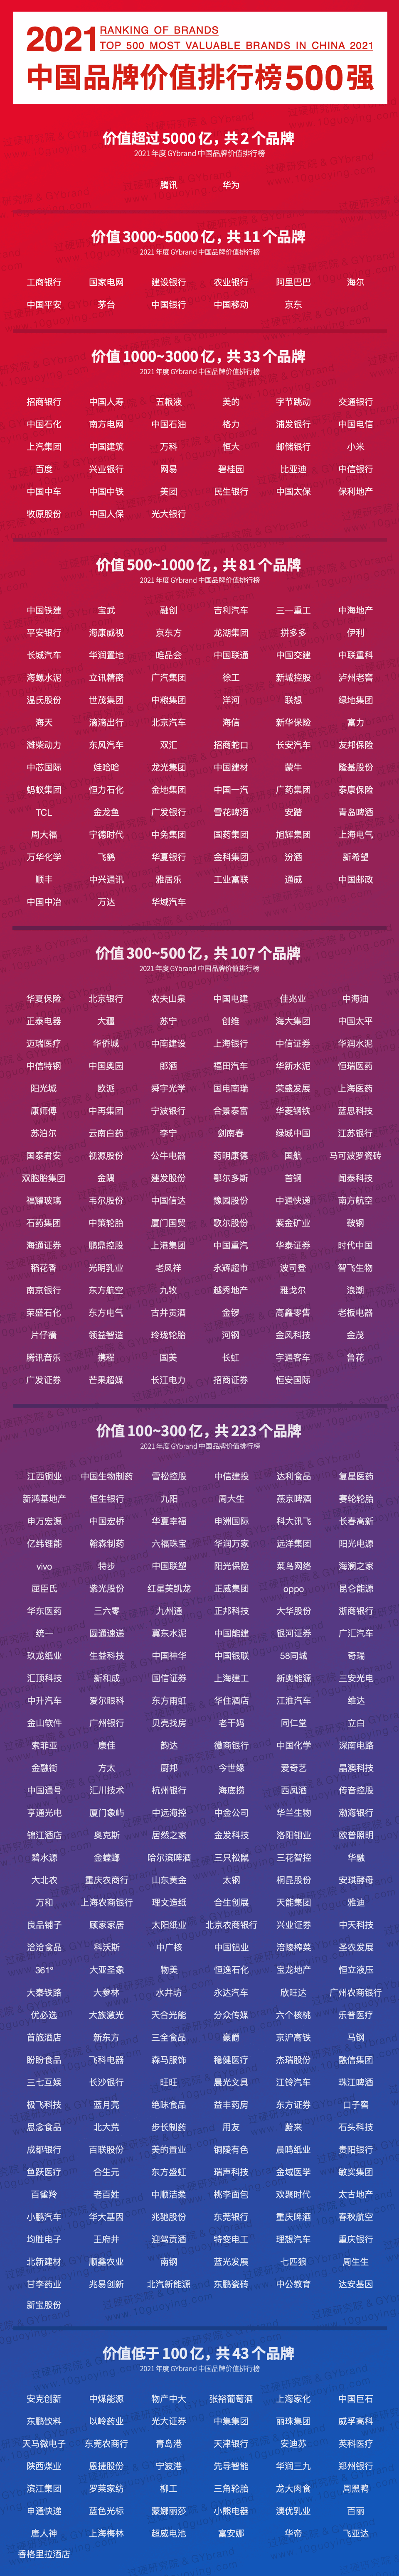 南京食品企业名录_天津食品企业排名_南京品牌食品企业排名